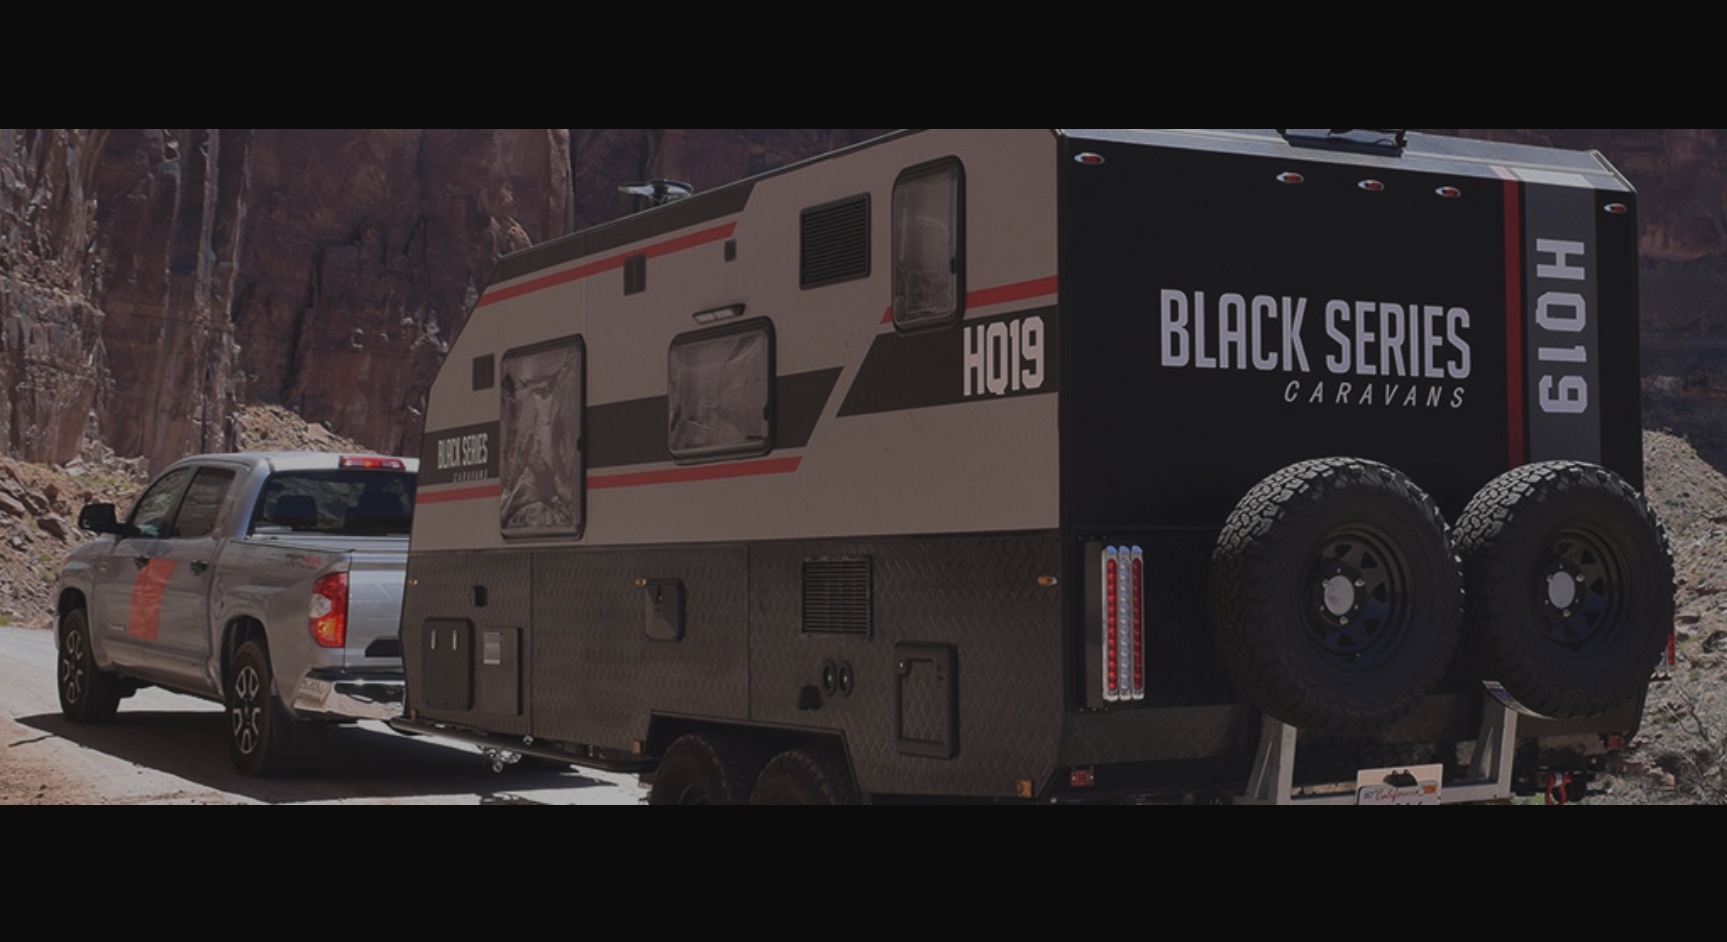 Black Series Camper Trailers